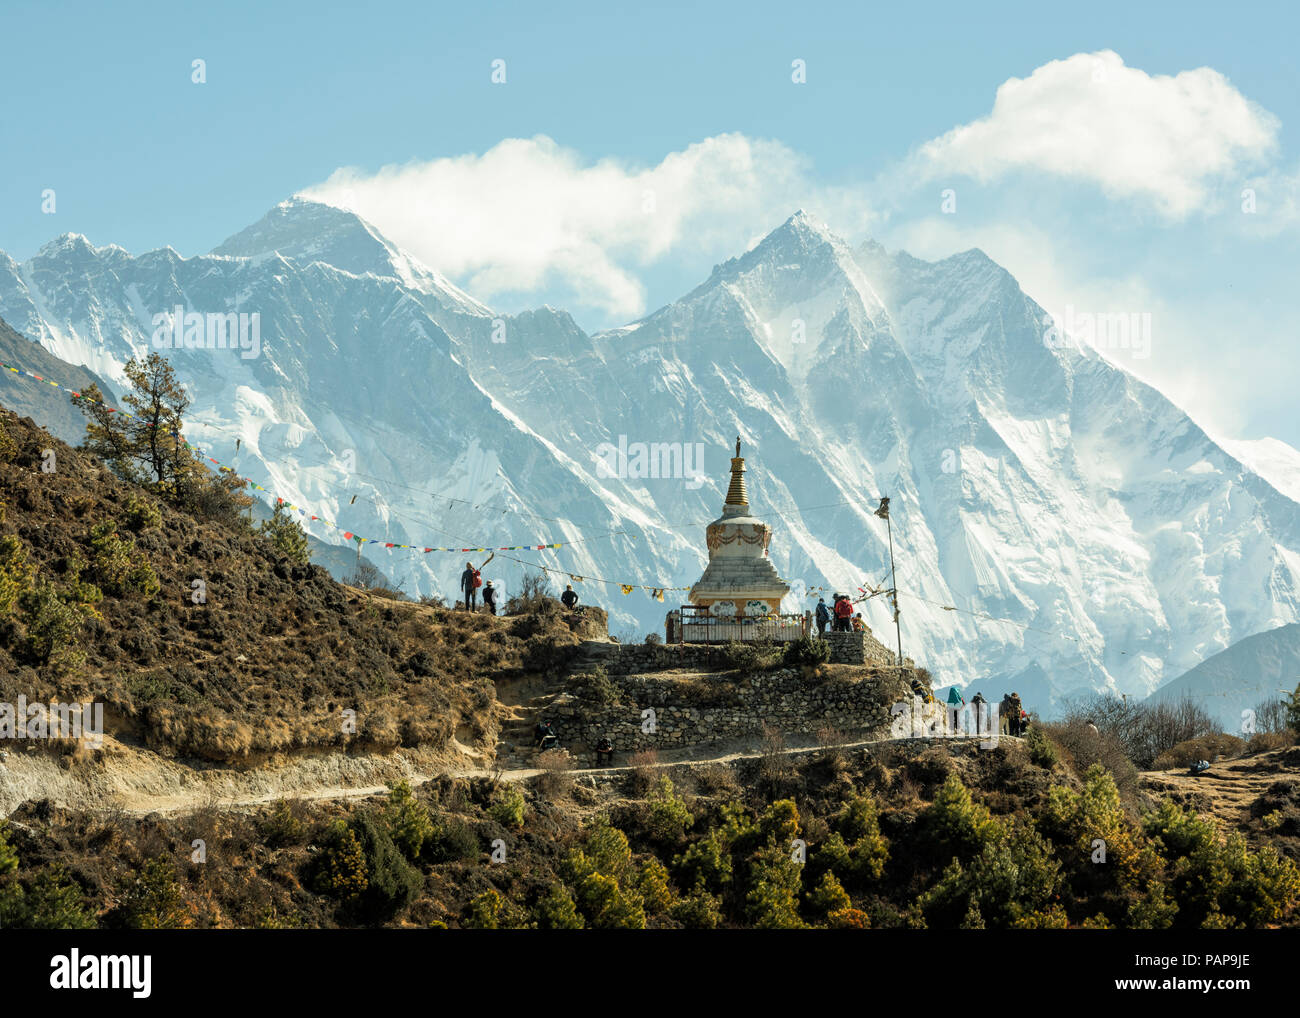 Il Nepal, Solo Khumbu, Everest, Sagamartha National Park, persone che visitano stupa Foto Stock